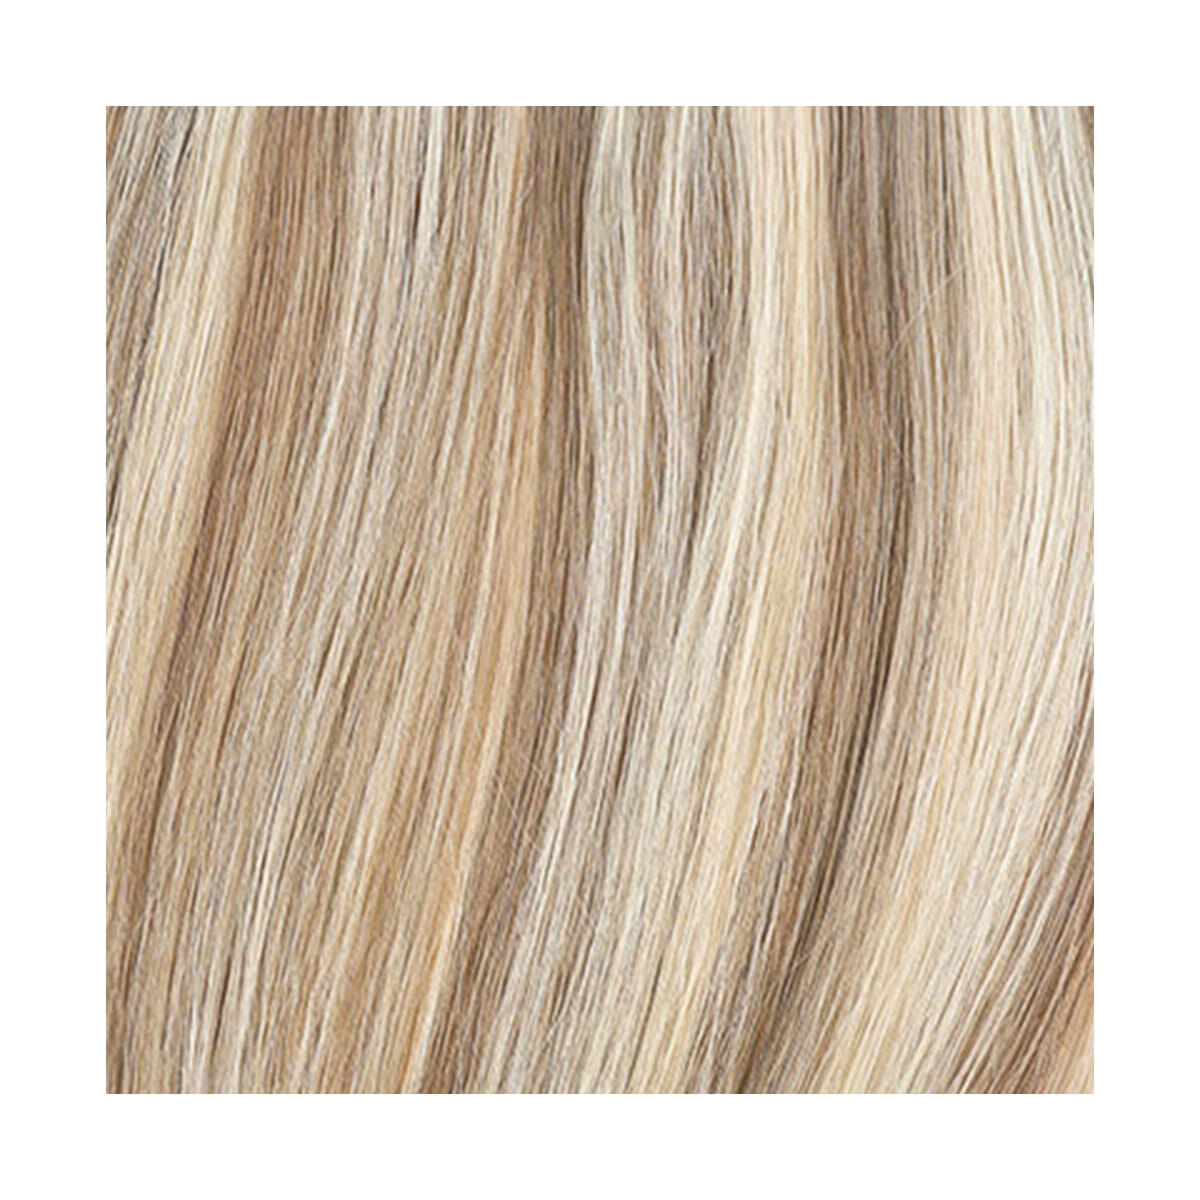 Colour Sample M7.1/10.8 Natural Ash Blonde Mix 20 cm